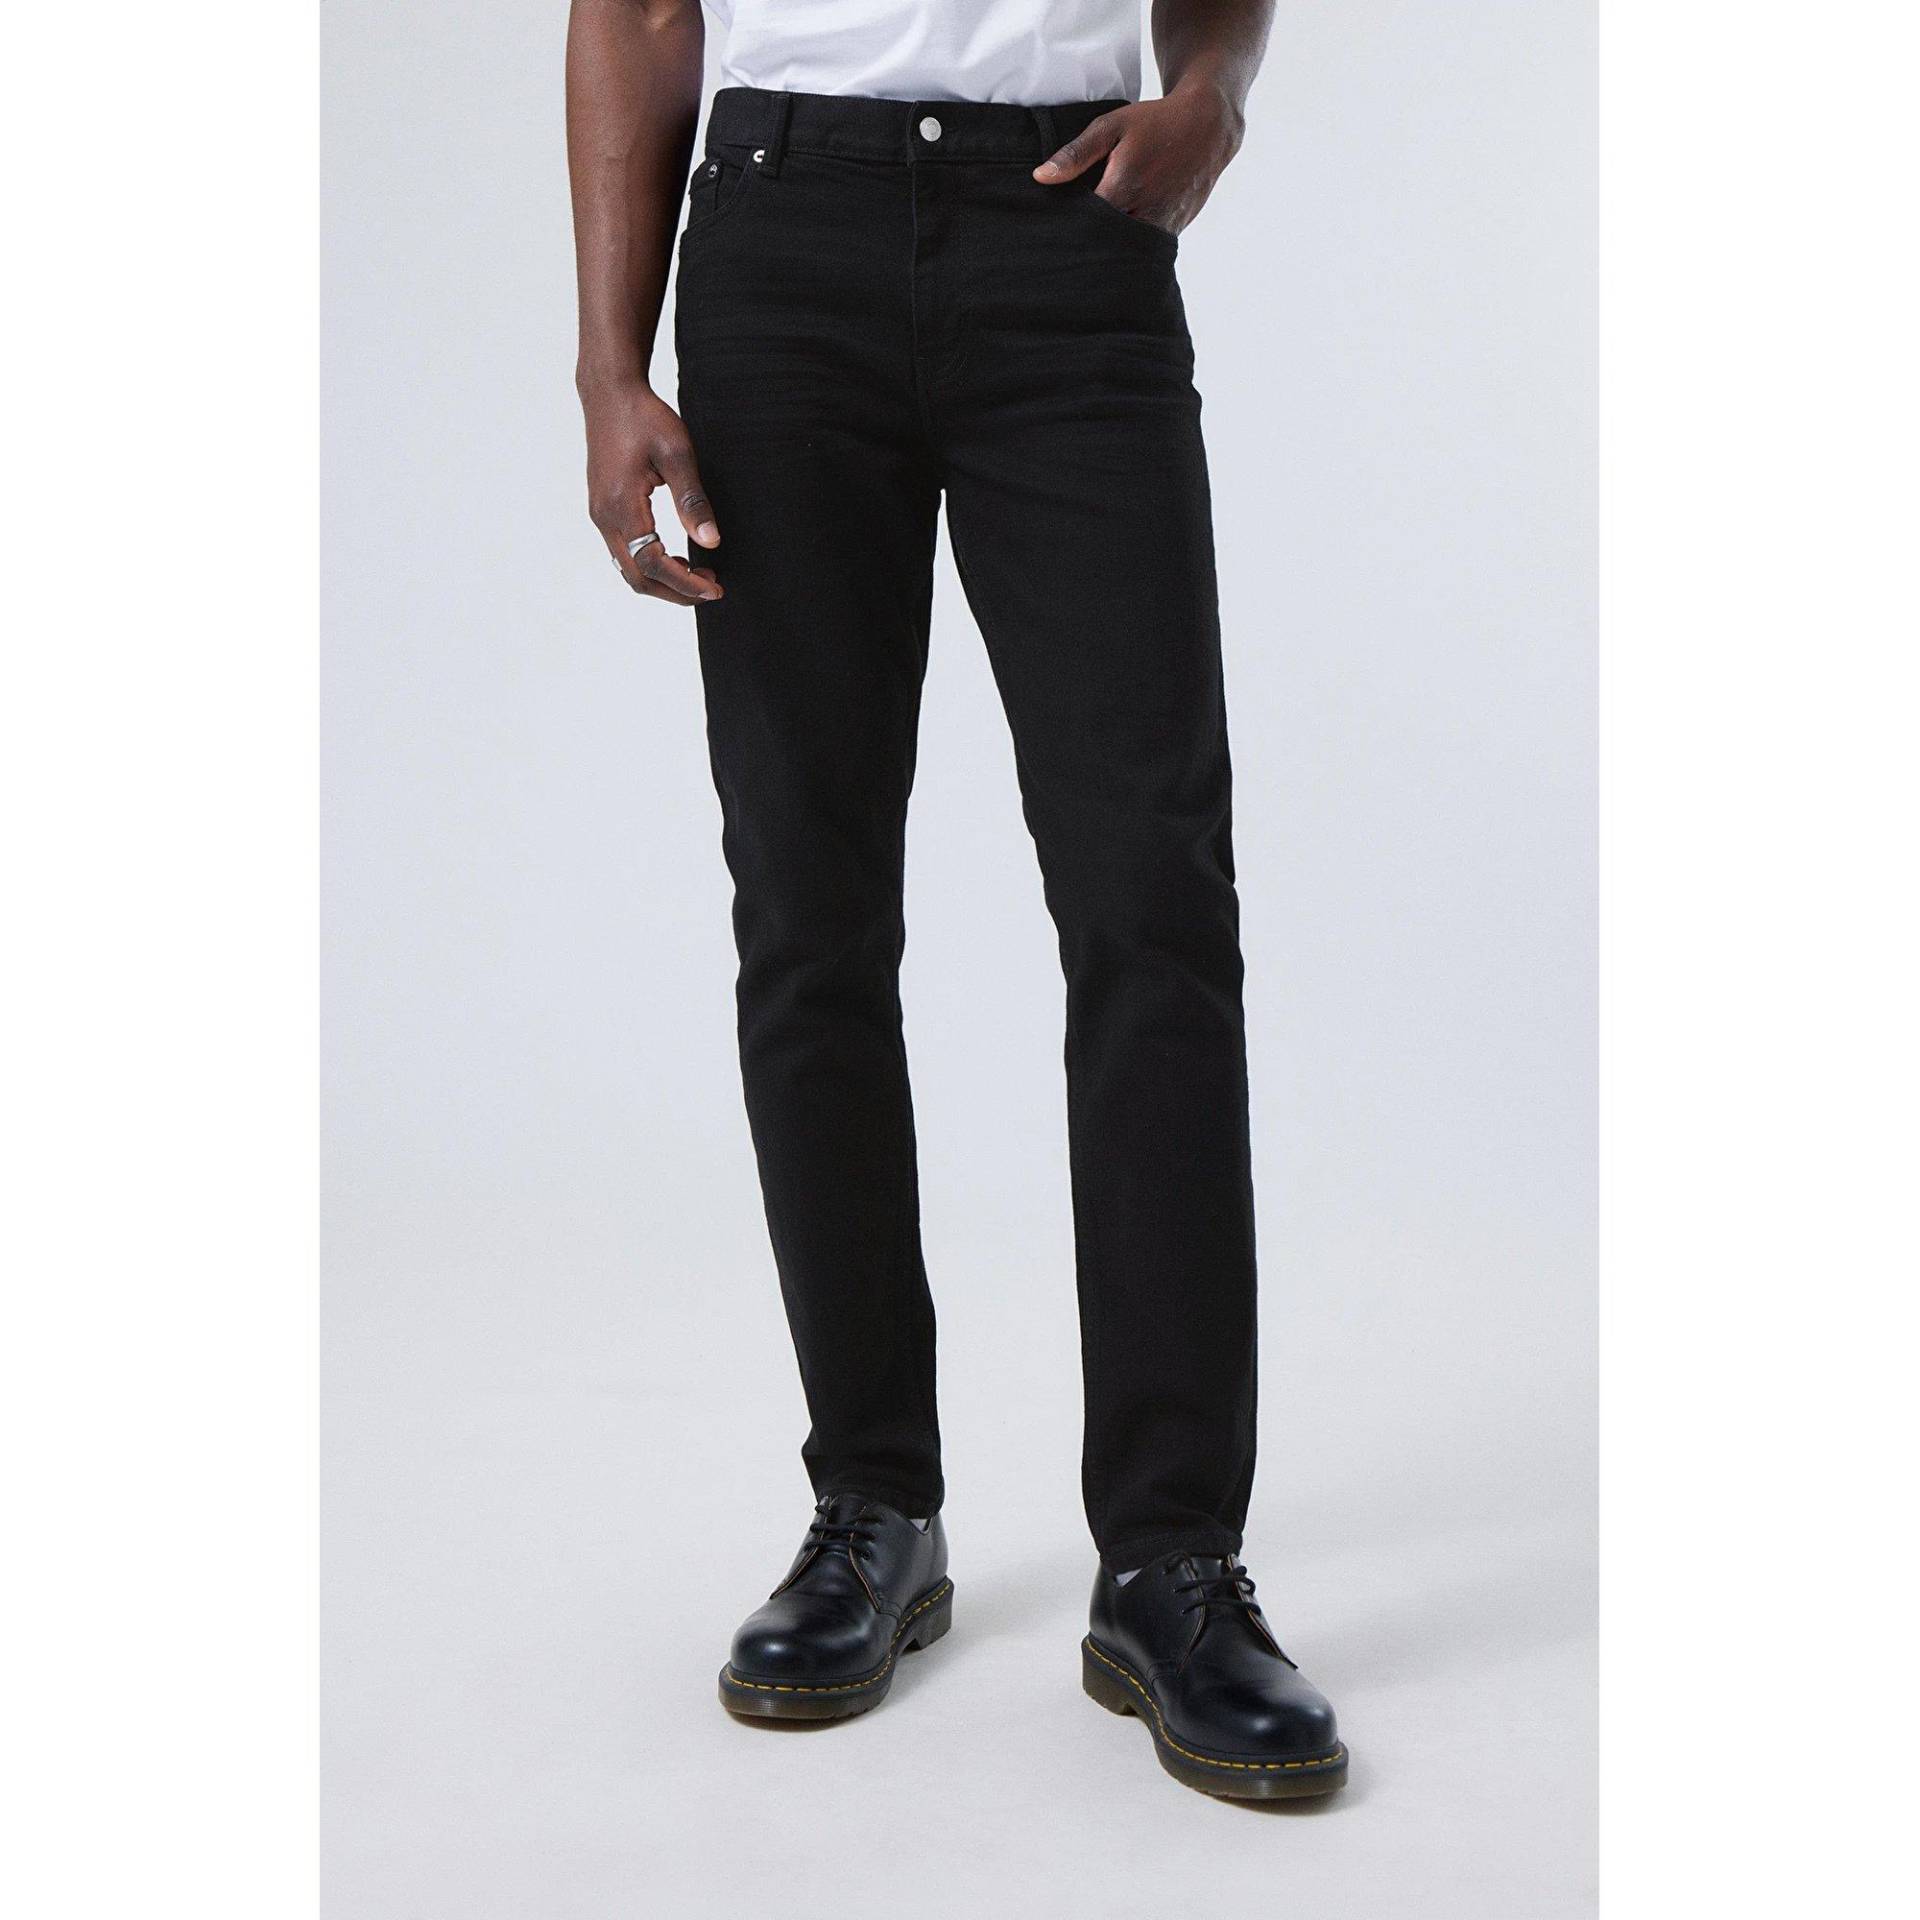 Jeans, Tapered Fit Herren Black L32/W30 von WEEKDAY